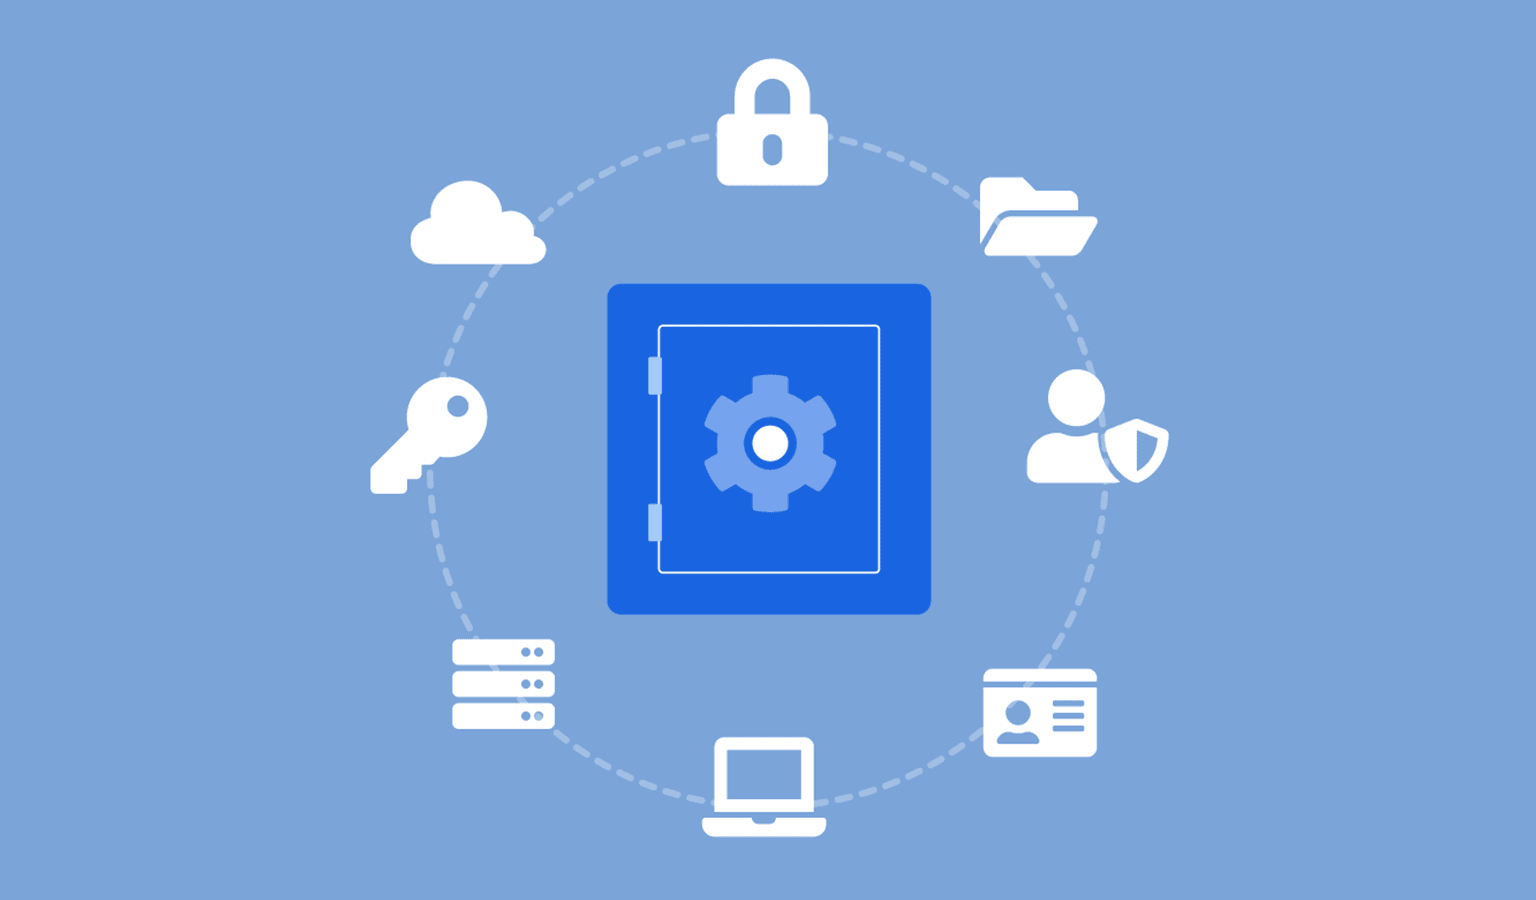 Fond bleu clair avec un coffre-fort bleu foncé au centre entouré d'icônes blanches, cadenas, nuage, clé, serveur, fichiers, ordinateur.